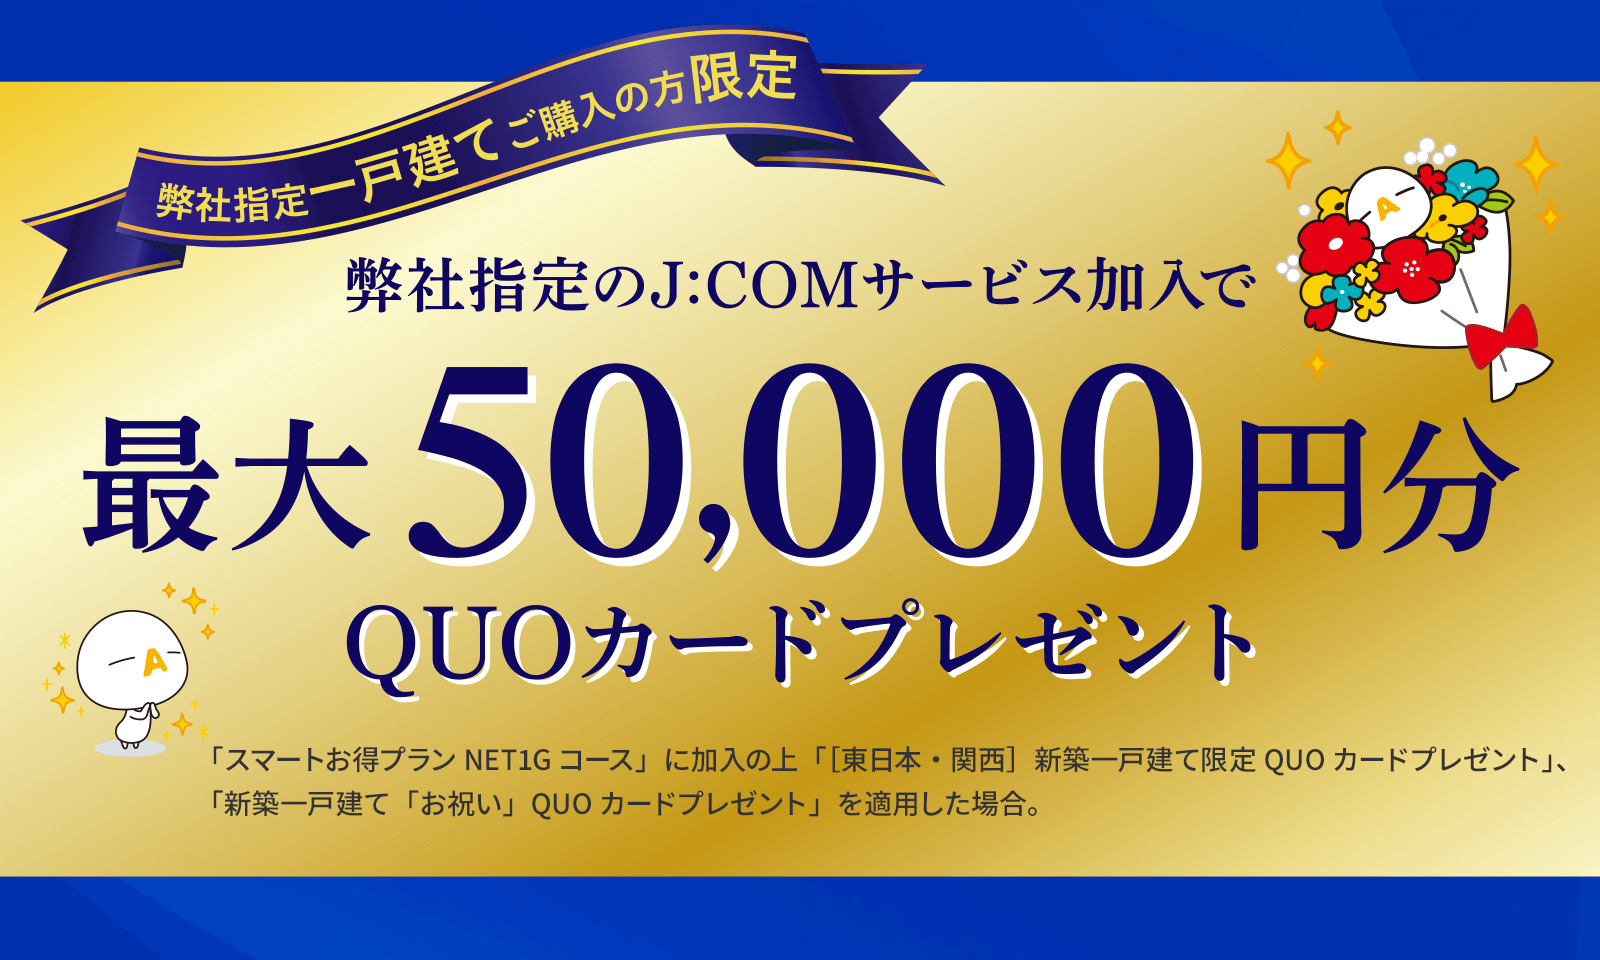 弊社指定のJ:COMサービスご加入で最大50,000円分QUOカードプレゼント